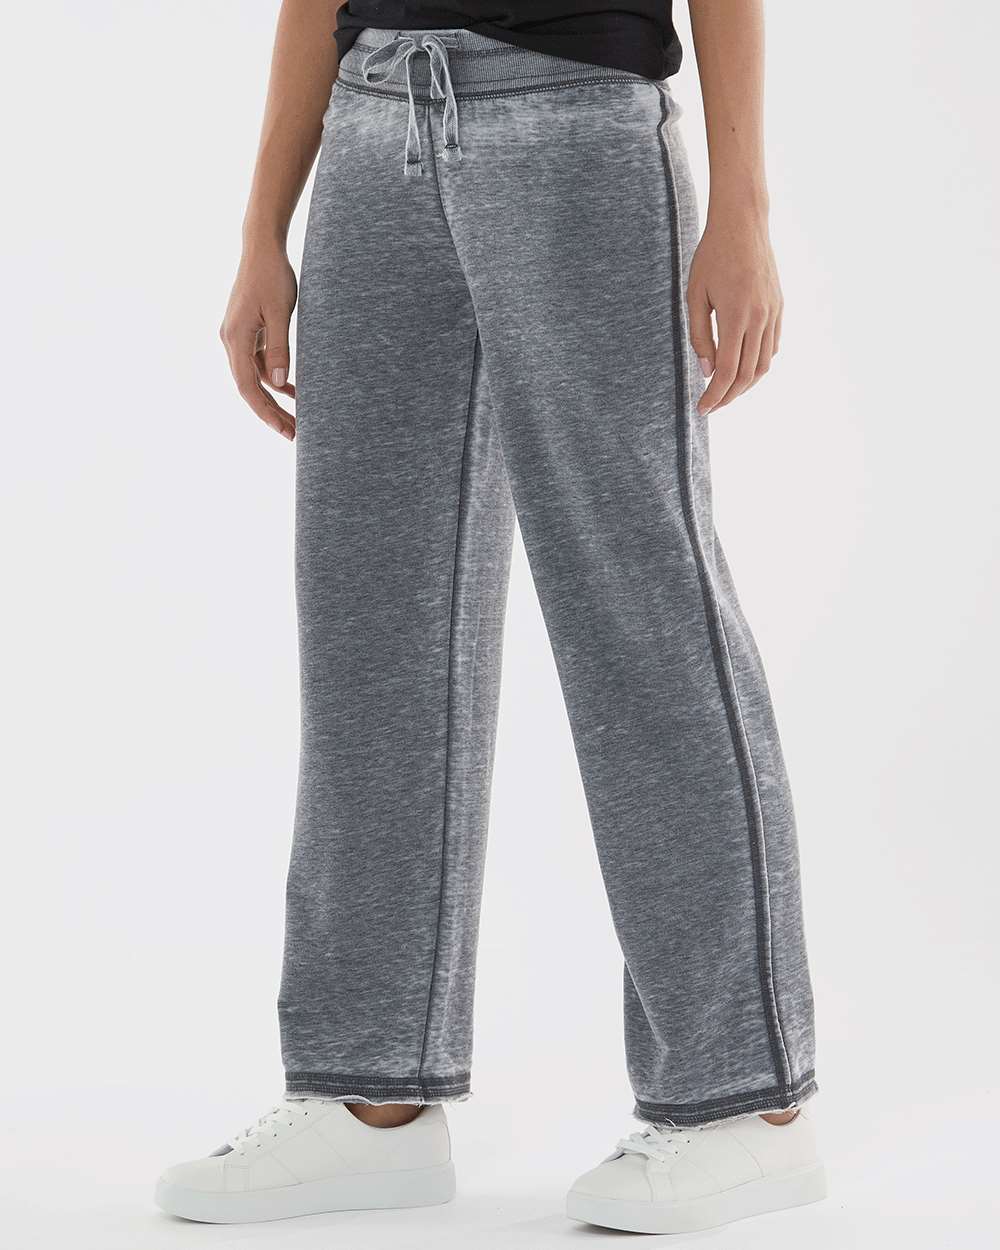 J. America Women’s Vintage Zen Fleece Sweatpants - image 2 of 5